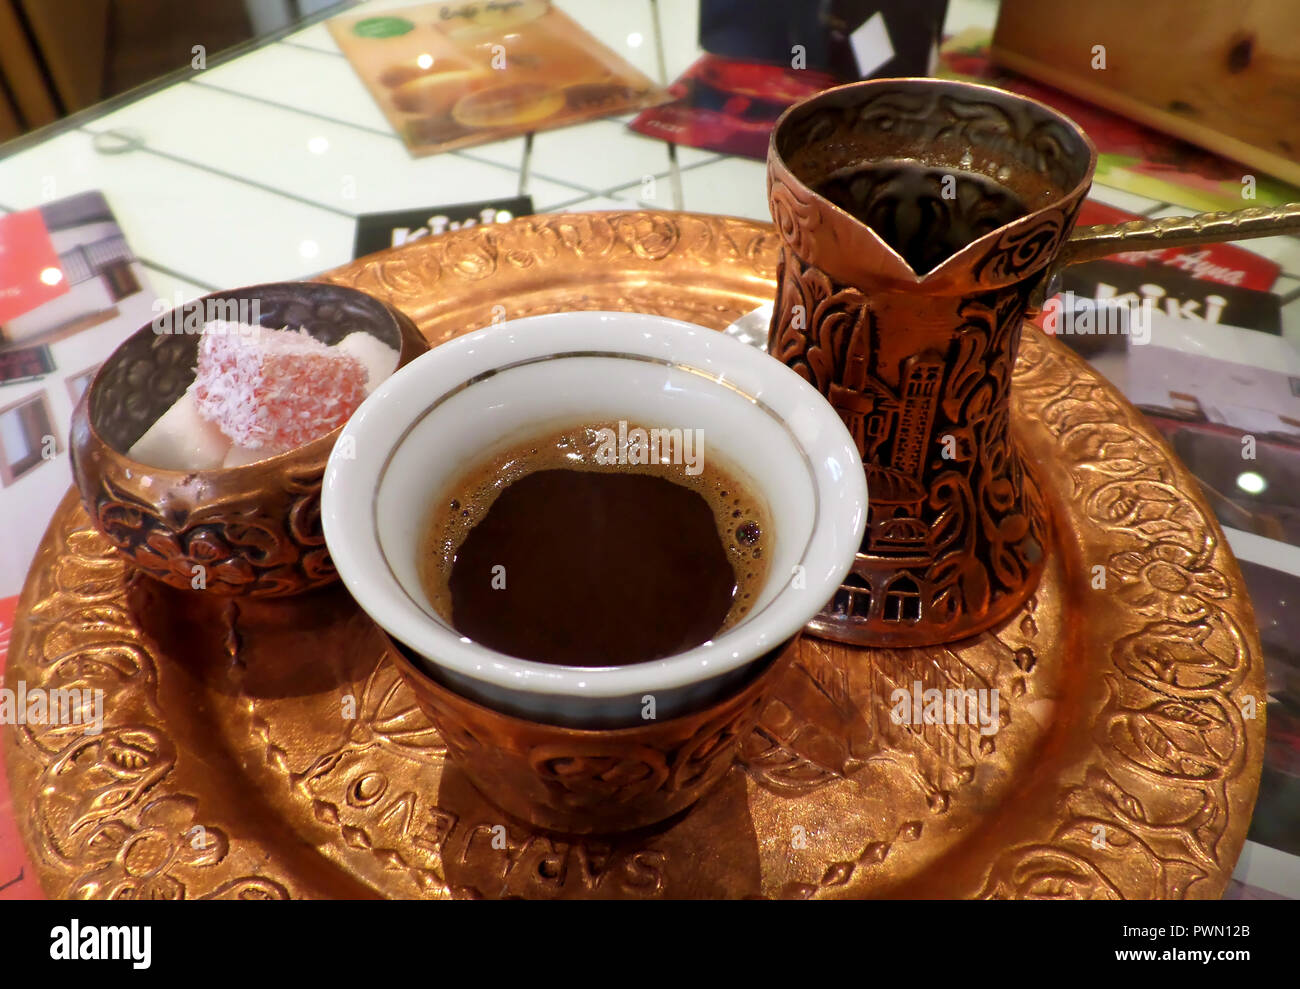 Hot bosnischen Kaffee Set mit langem Hals kleiner Topf oder Dzezva und  einige Süßigkeiten in Zucker Topf serviert Stockfotografie - Alamy